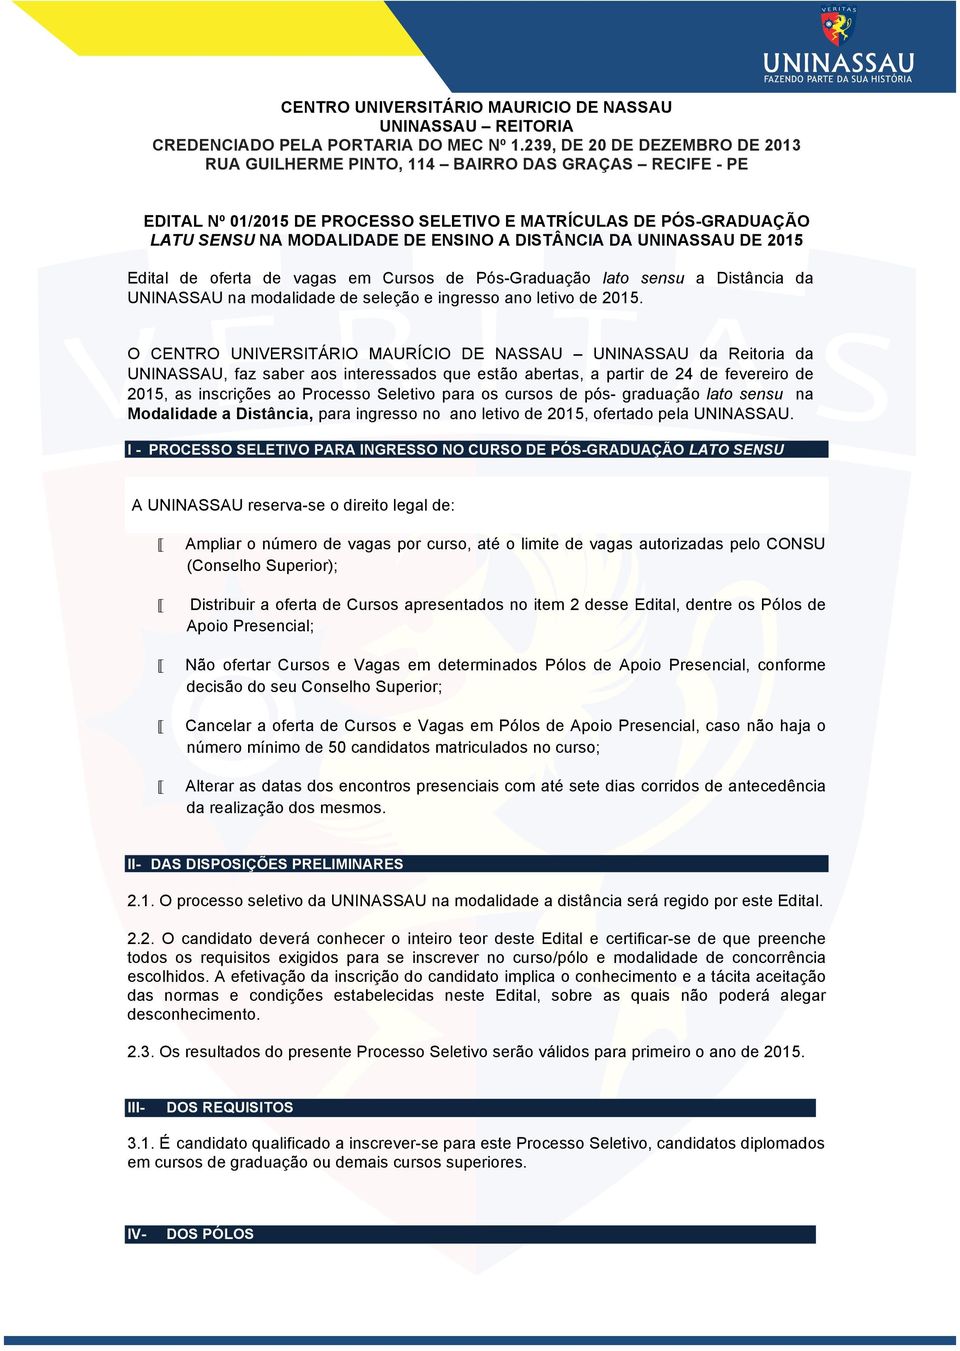 2015 Edital de oferta de vagas em Cursos de Pós-Graduação lato sensu a Distância da UNINASSAU na modalidade de seleção e ingresso ano letivo de 2015.